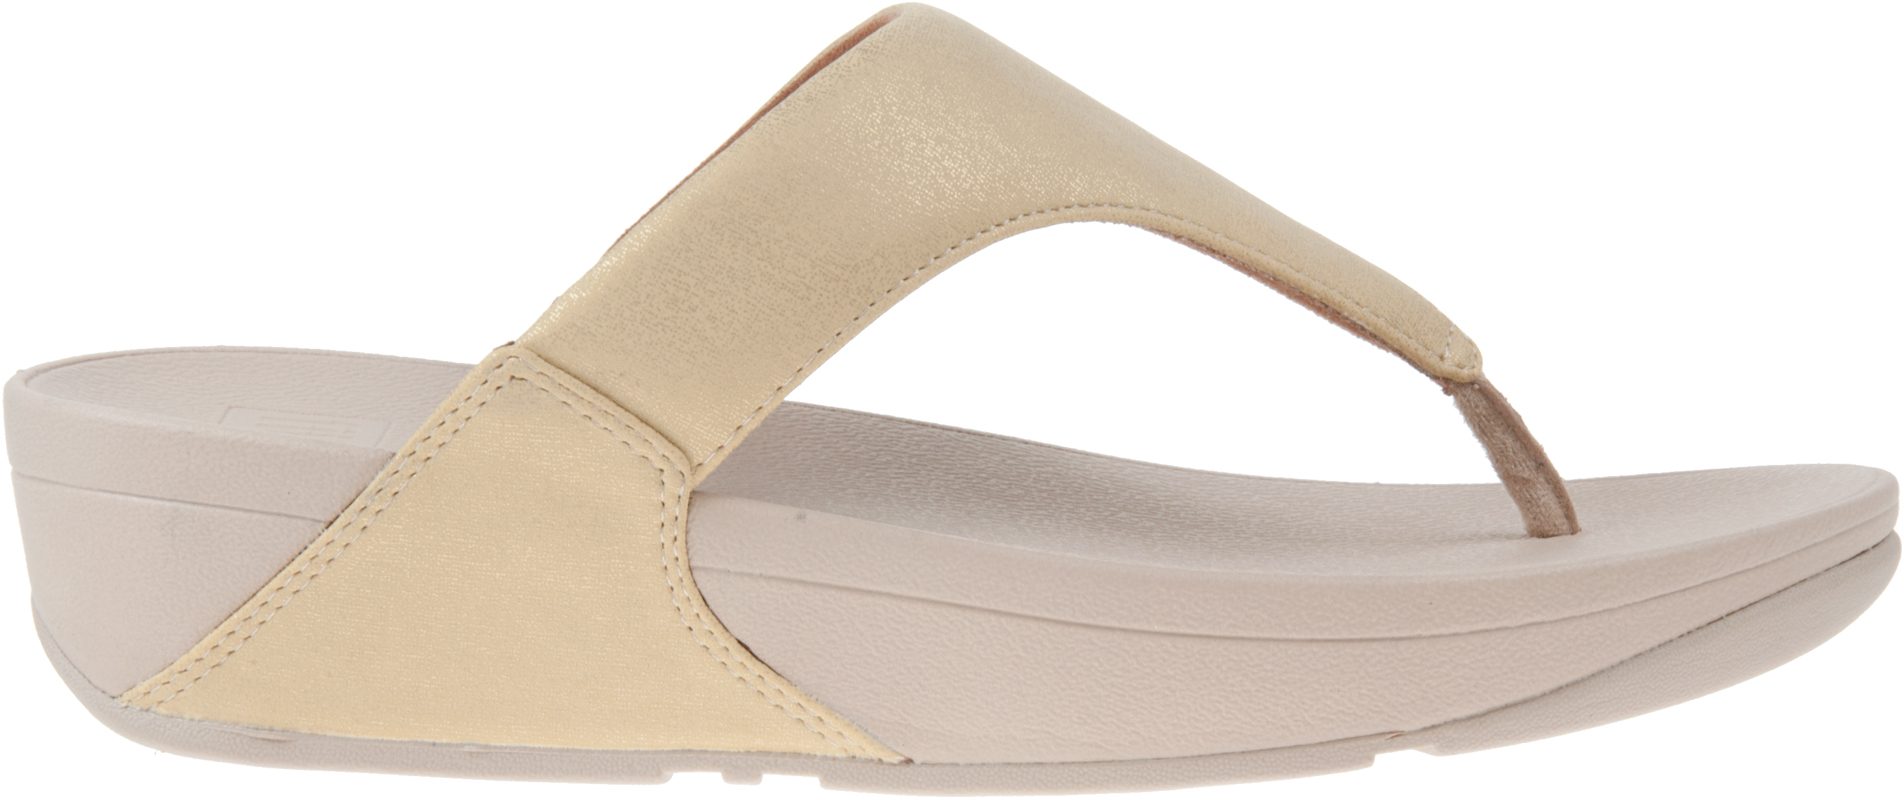 FitFlop Lulu Shimmer Vintage Gold U04-796 - Toe Post Sandals ...